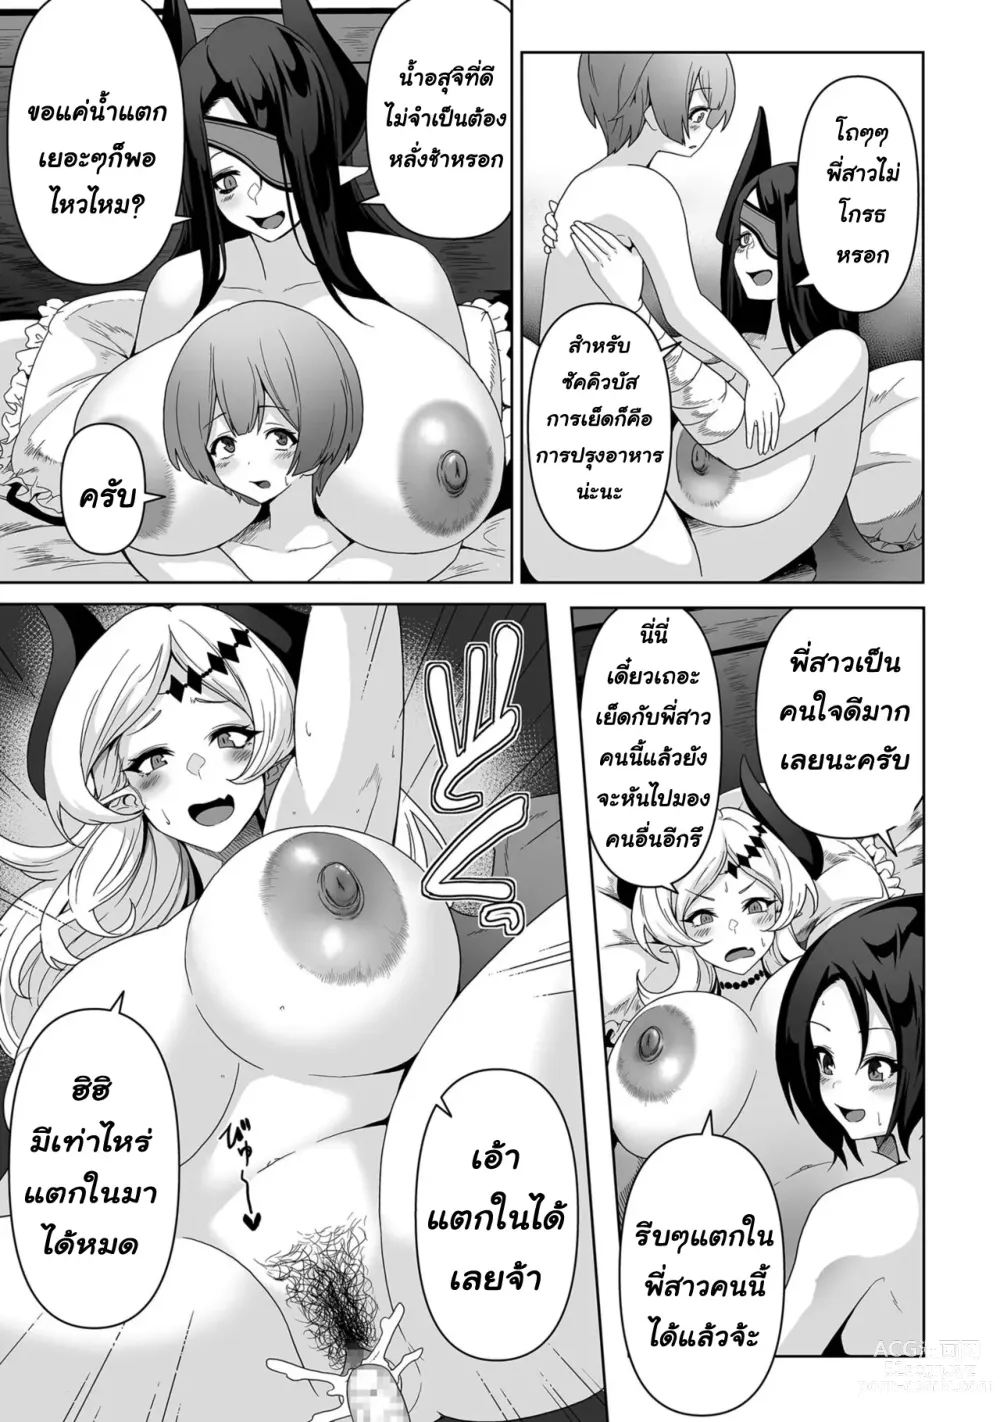 Page 18 of manga Sakyubasu kingudamu dai isekai kara kita shounen 2